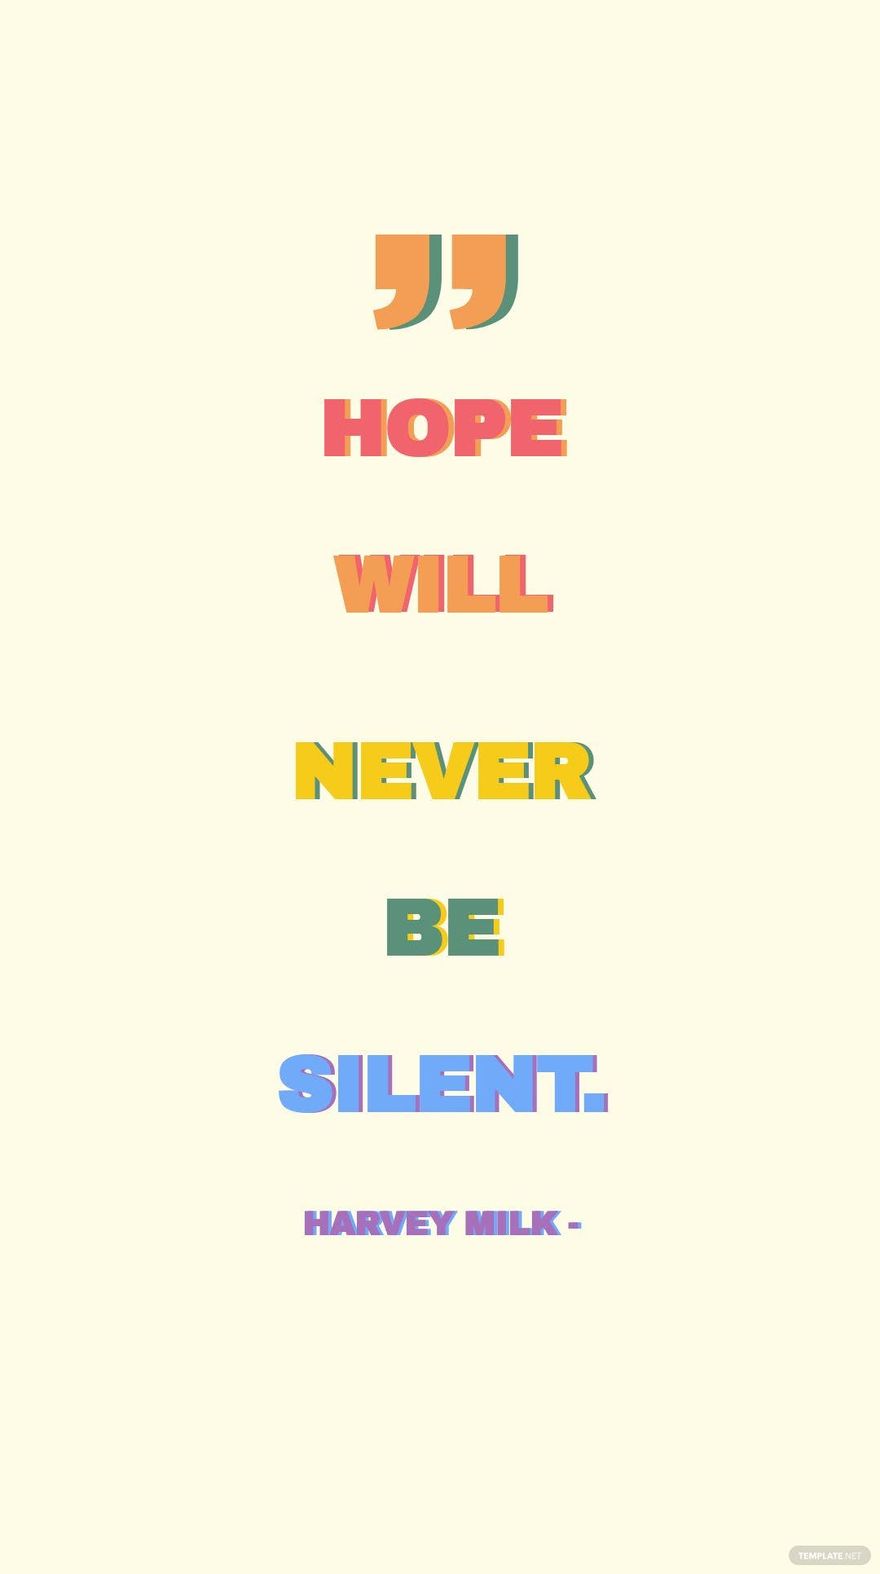 Harvey Milk - Hope will never be silent.